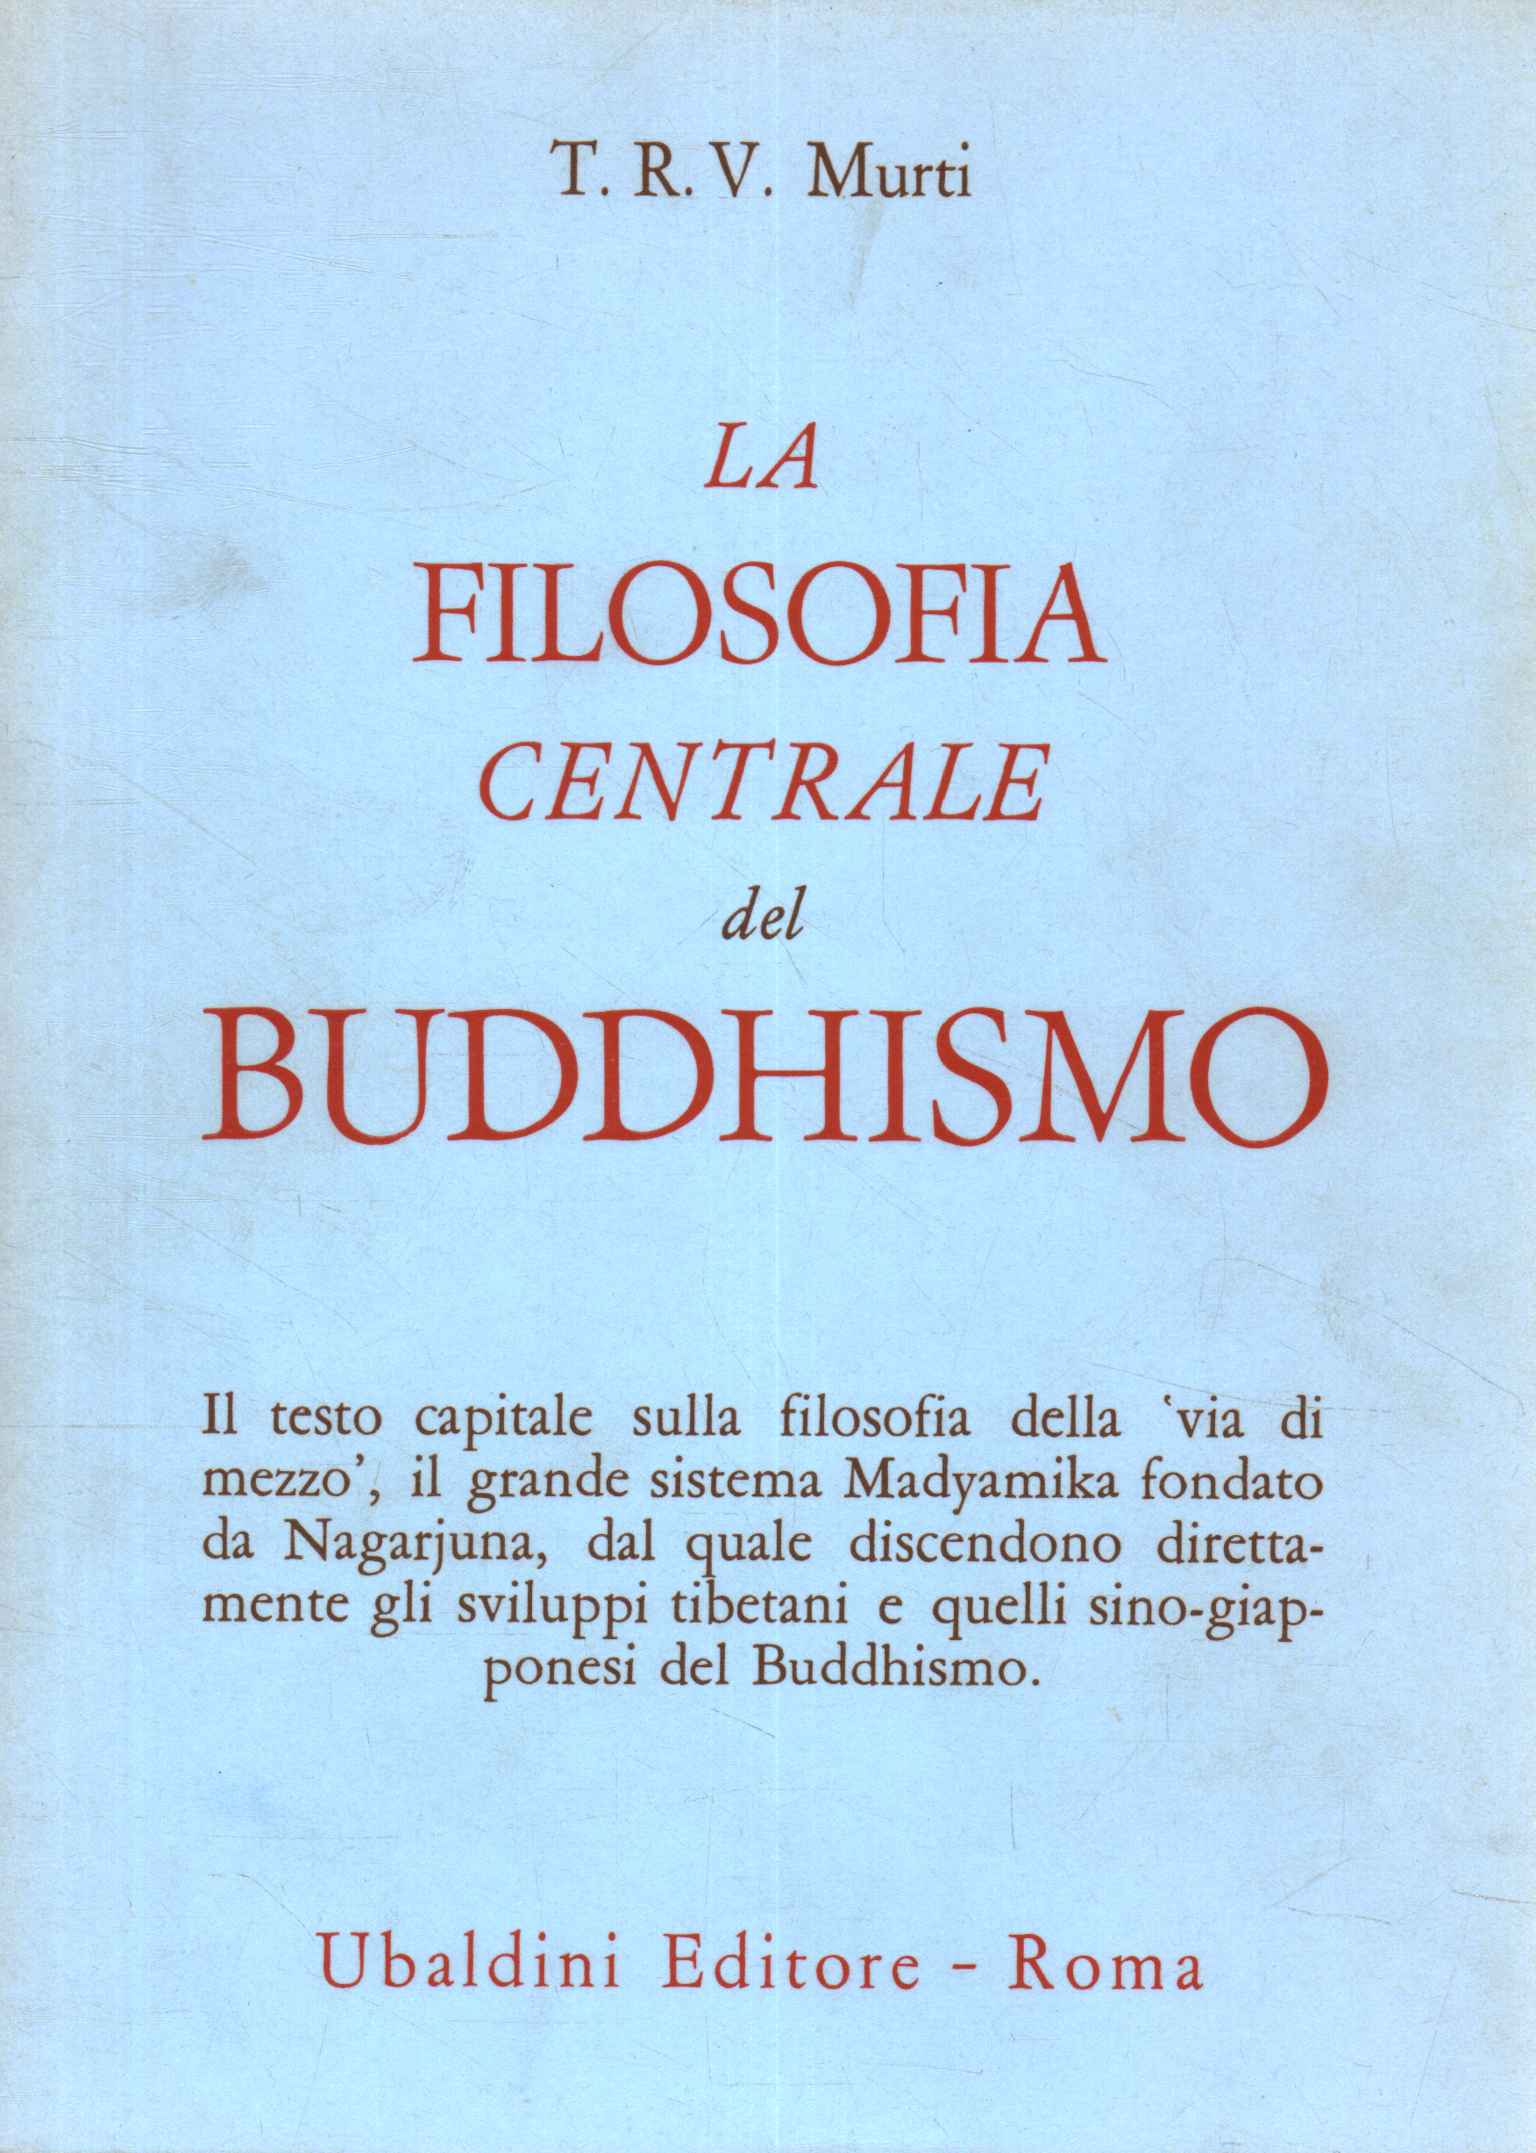 Die zentrale Philosophie des Buddhismus